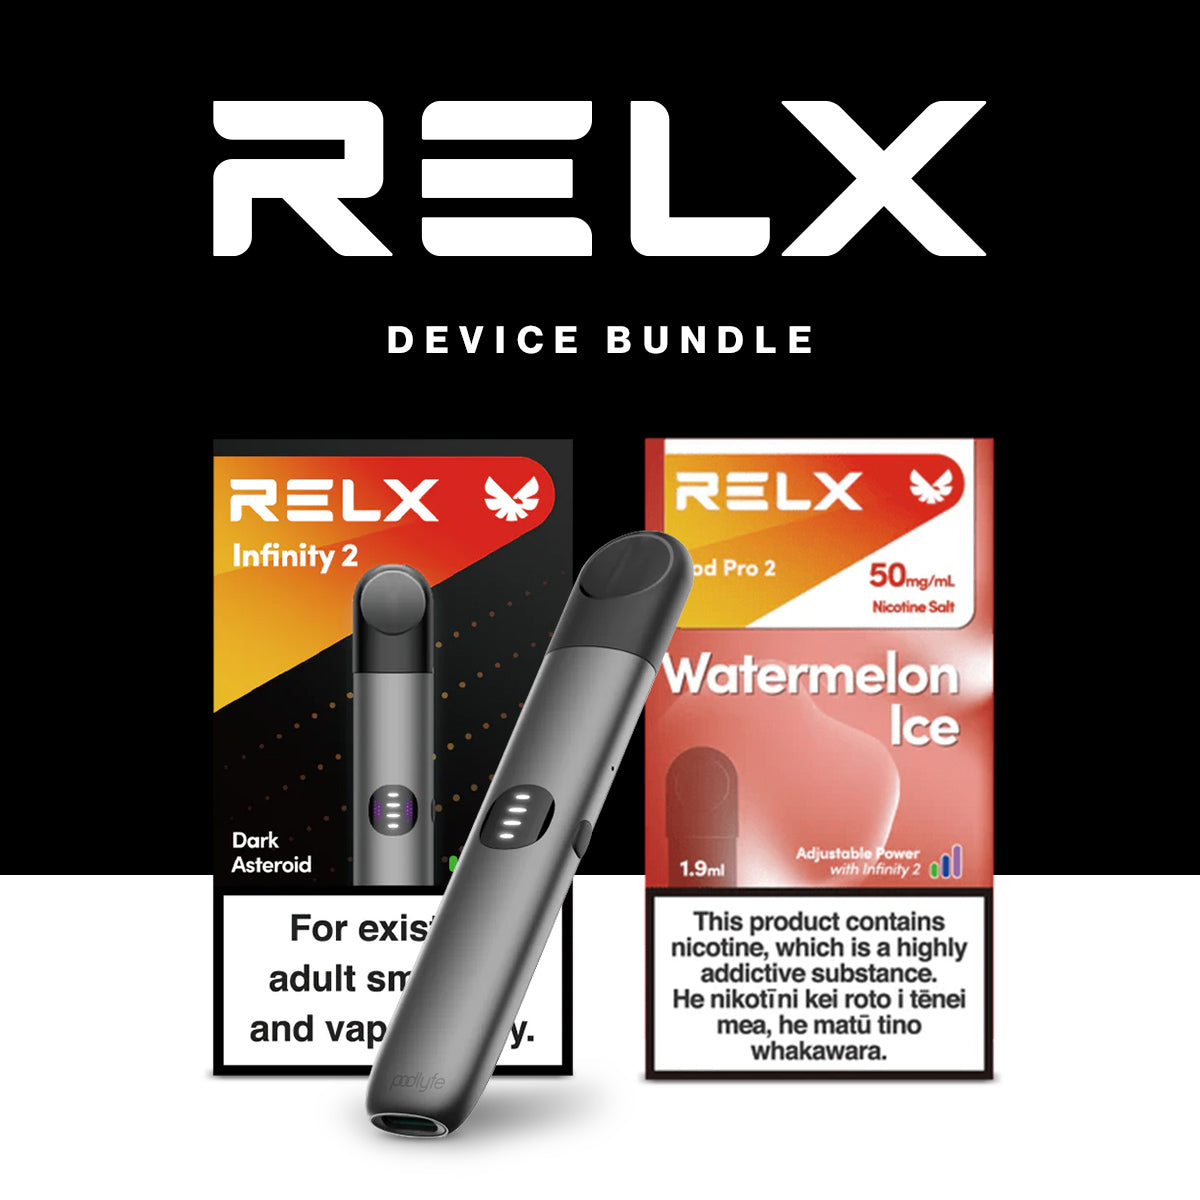 RELX Infinity 2 Device Bundle